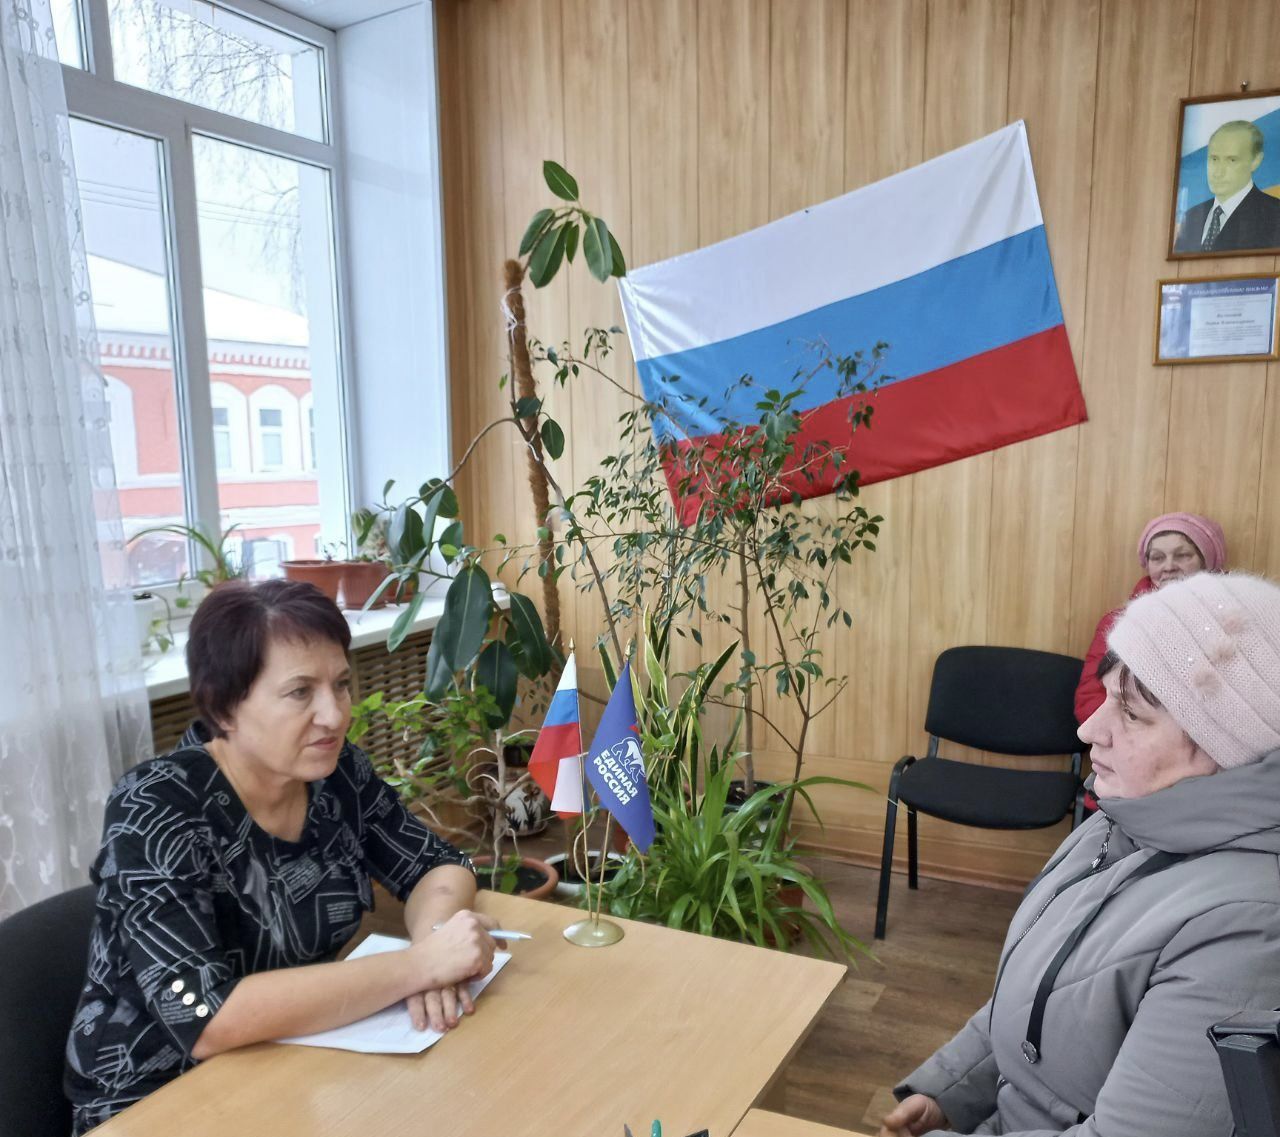 Более 1300 жителей Ульяновской области получили бесплатную юридическую помощь